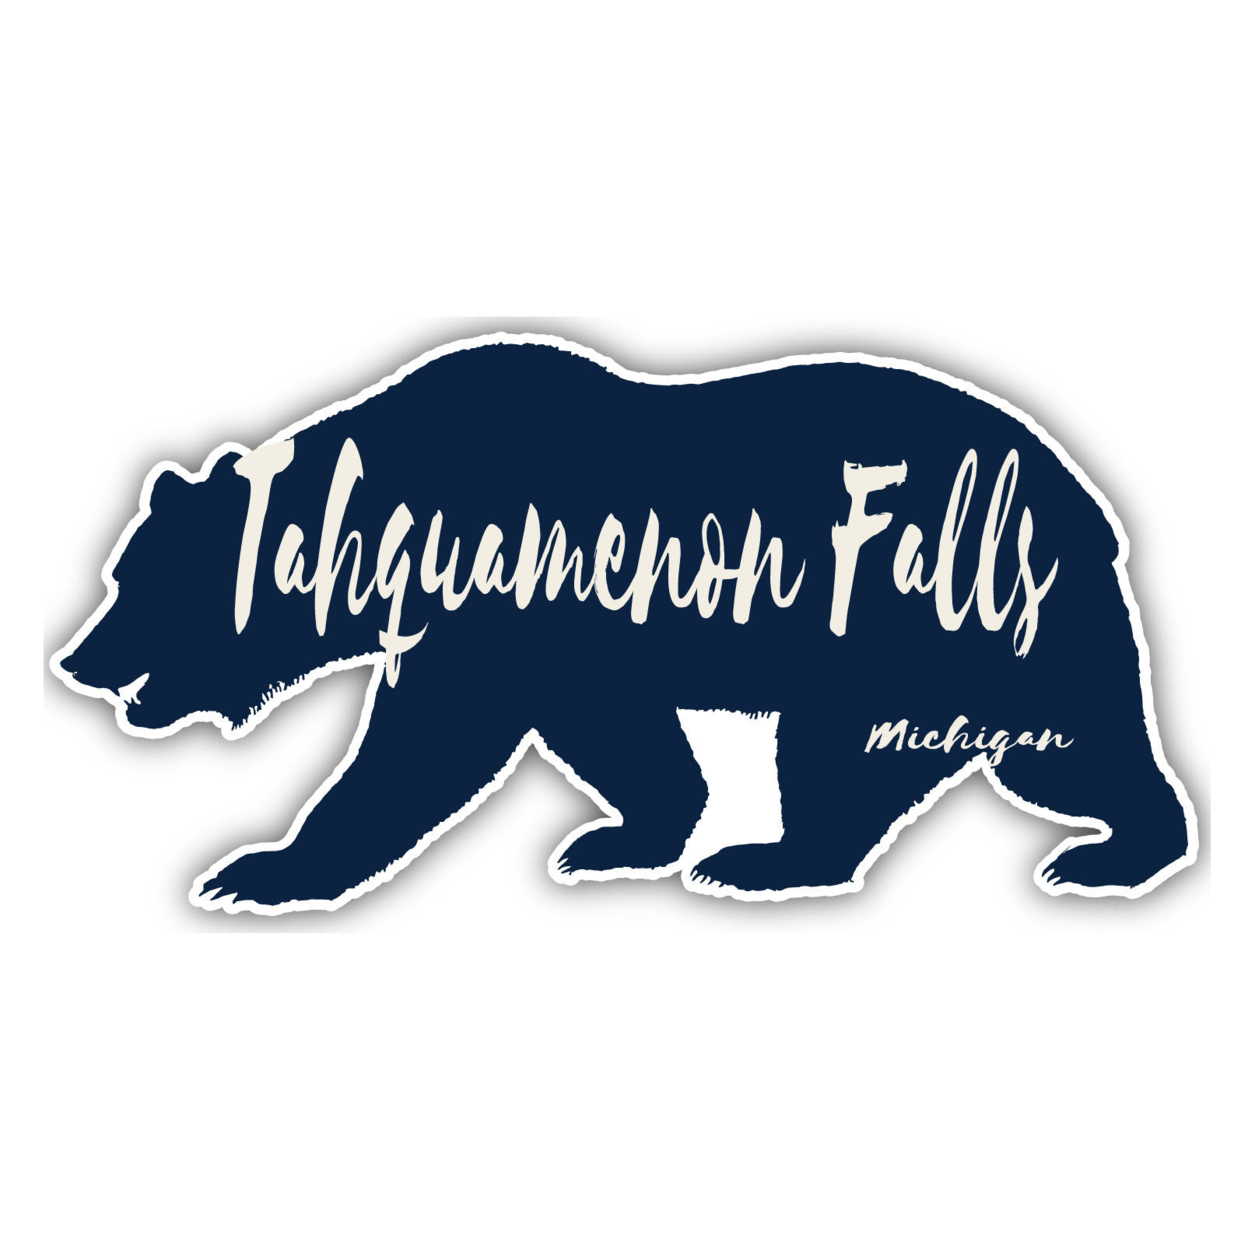 Tahquamenon Falls Michigan Souvenir Decorative Stickers (Choose Theme And Size) - Single Unit, 2-Inch, Bear